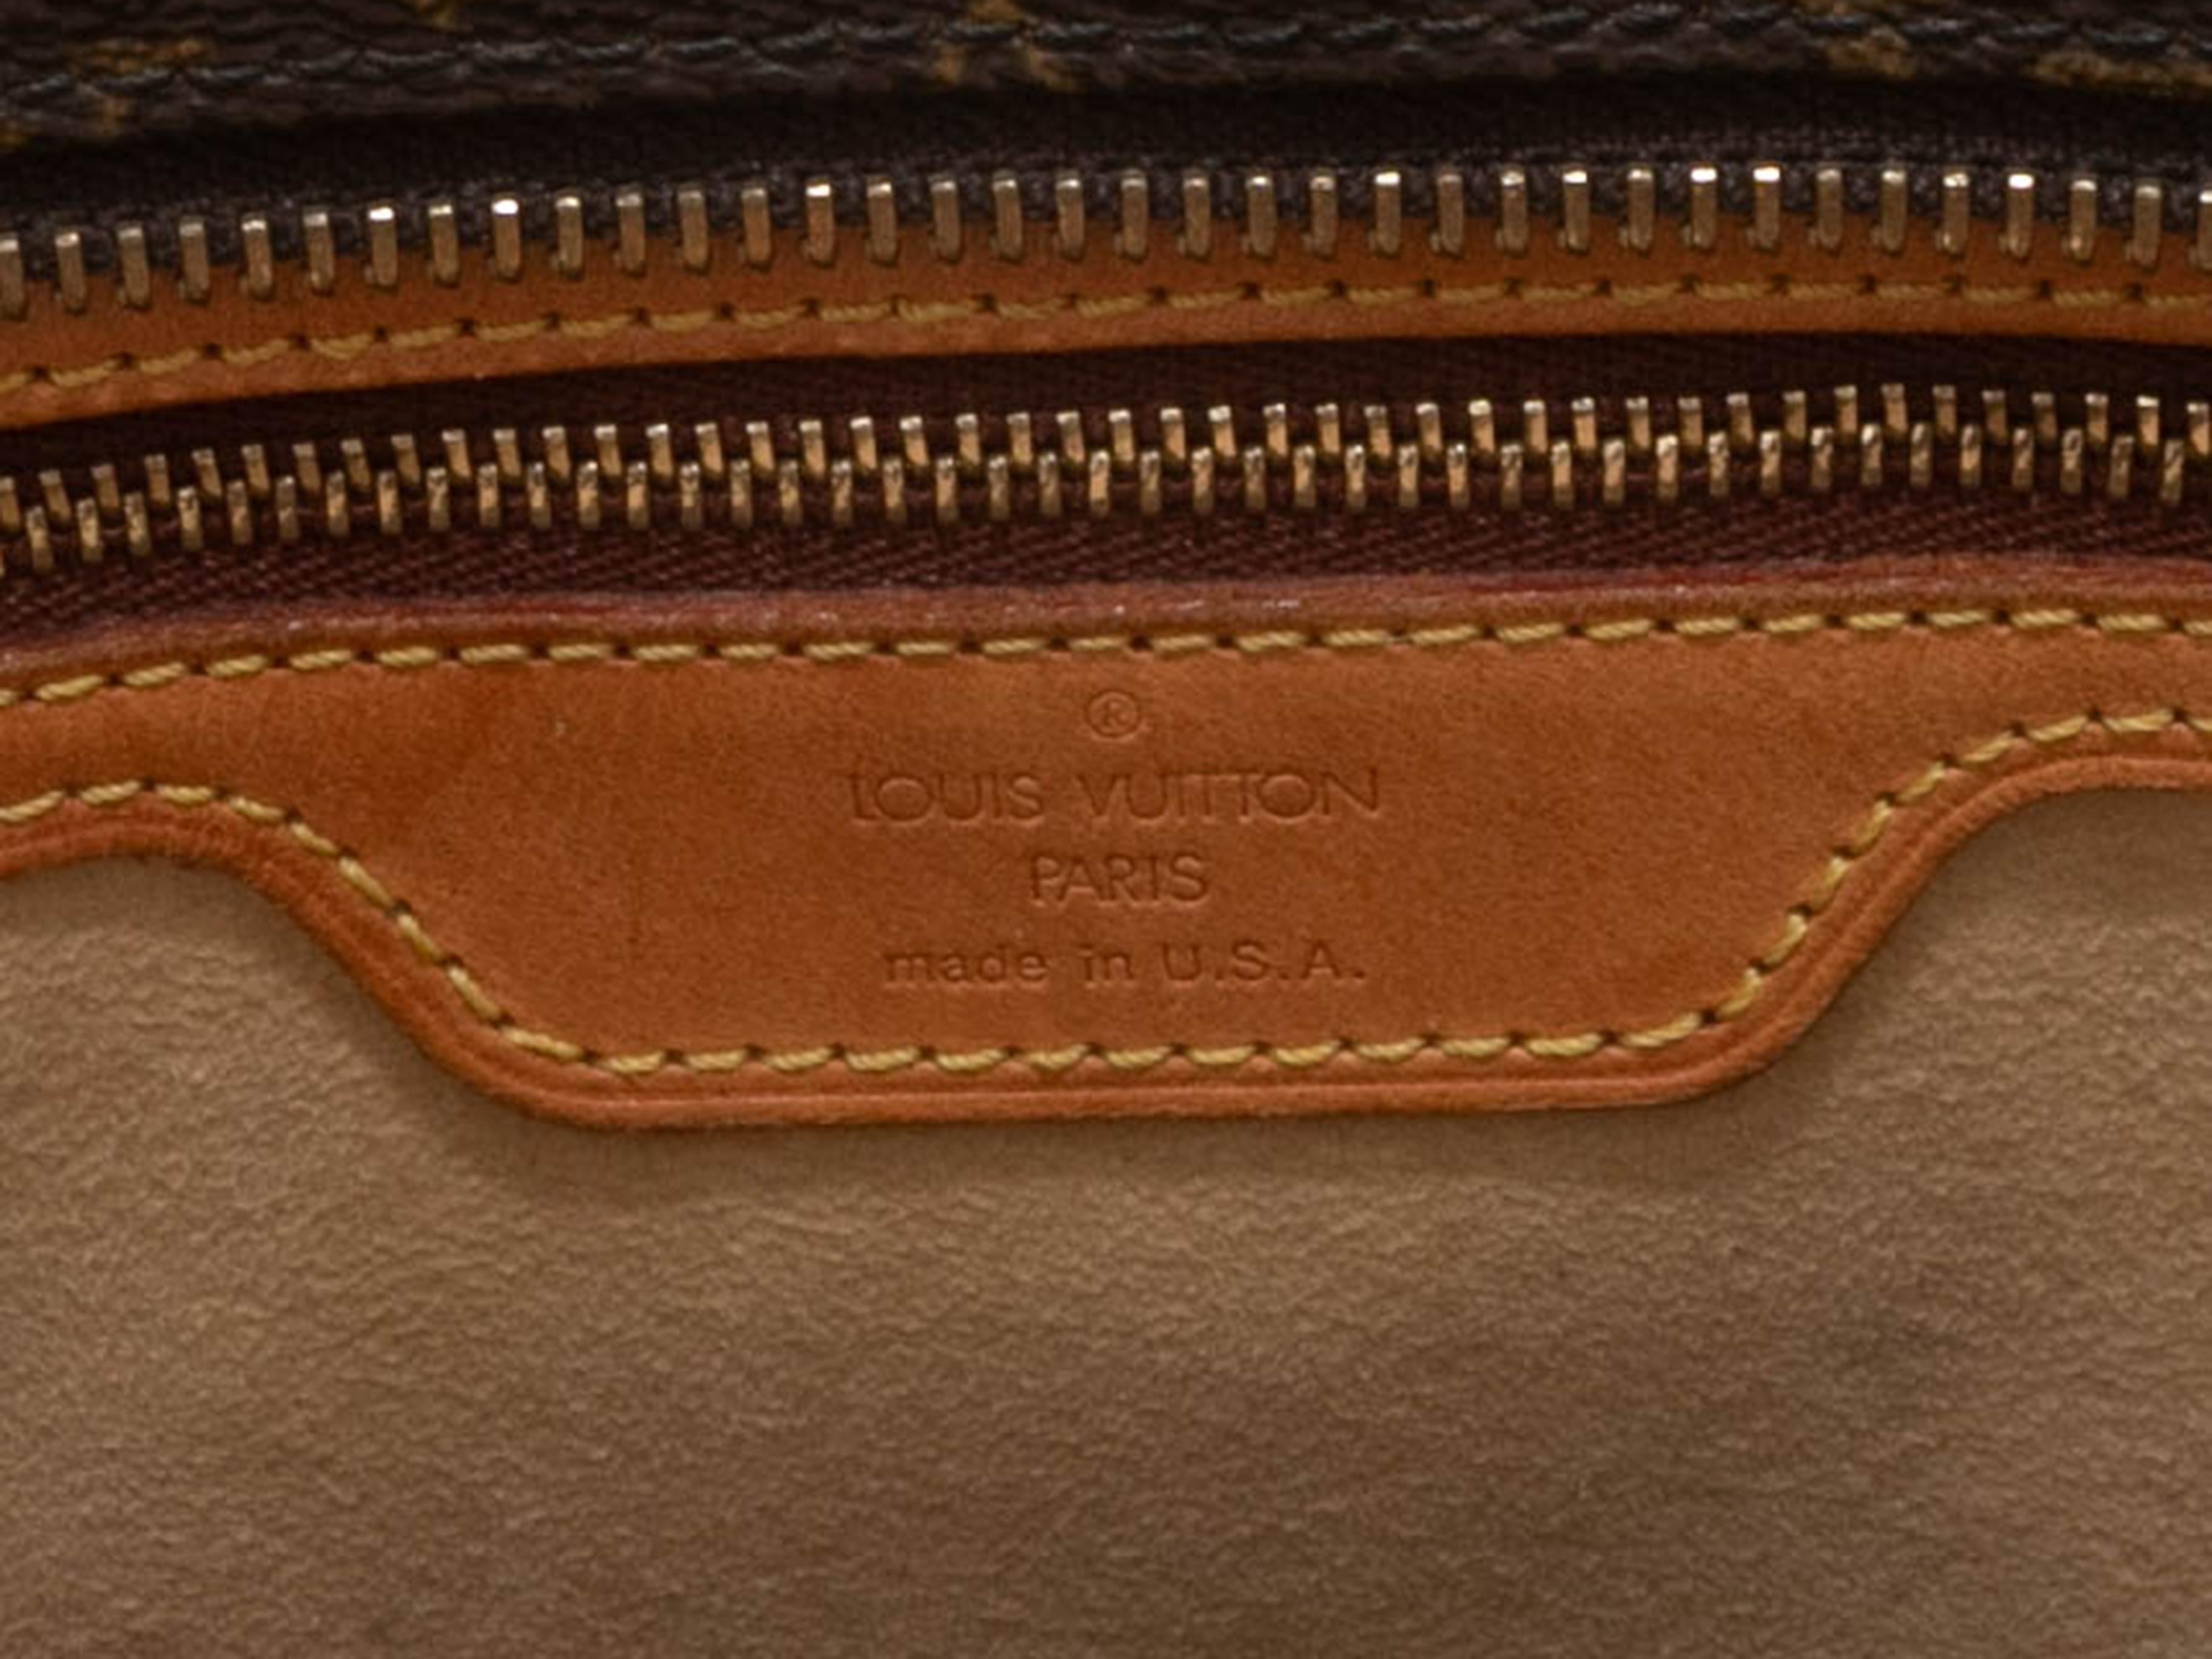 Braune Louis Vuitton Monogram Cabas-Tasche. Die Cabas Tote hat einen Korpus aus beschichtetem Canvas mit Monogrammen, Lederbesatz, goldfarbene Beschläge, zwei flache Schulterriemen und einen Reißverschluss oben. 18